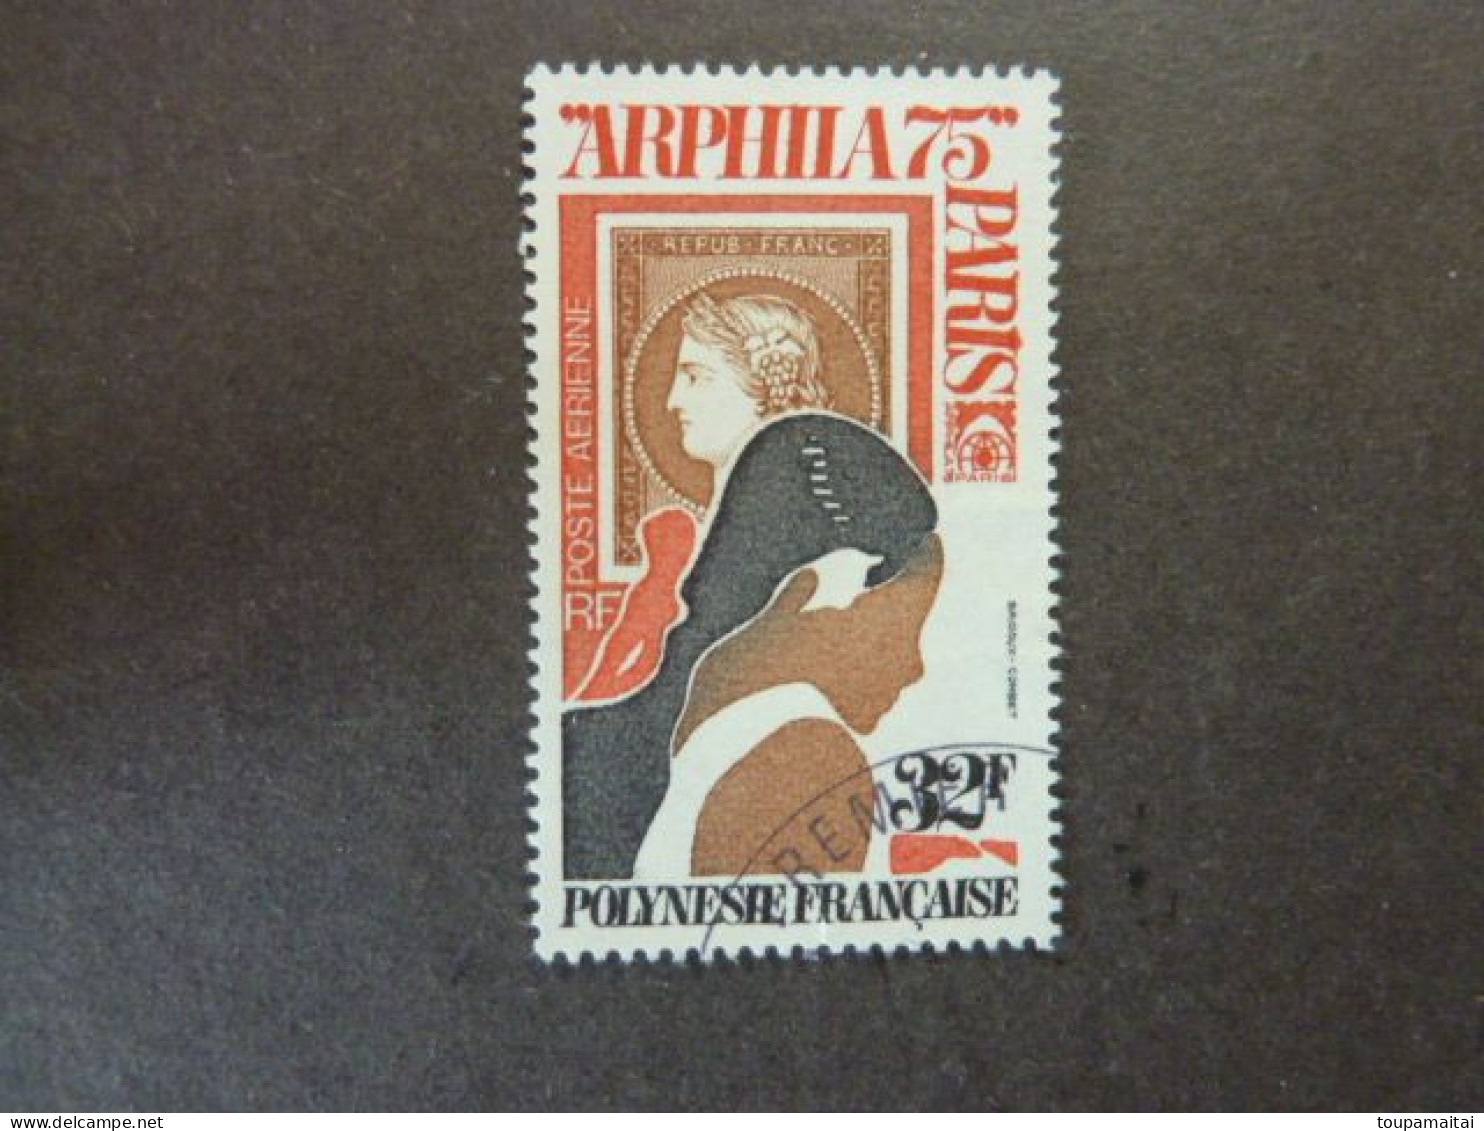 POLYNESIE FRANCAISE, Poste Aérienne, Année 1975, YT N° 92 Oblitéré, Arphilia 75 Paris - Used Stamps